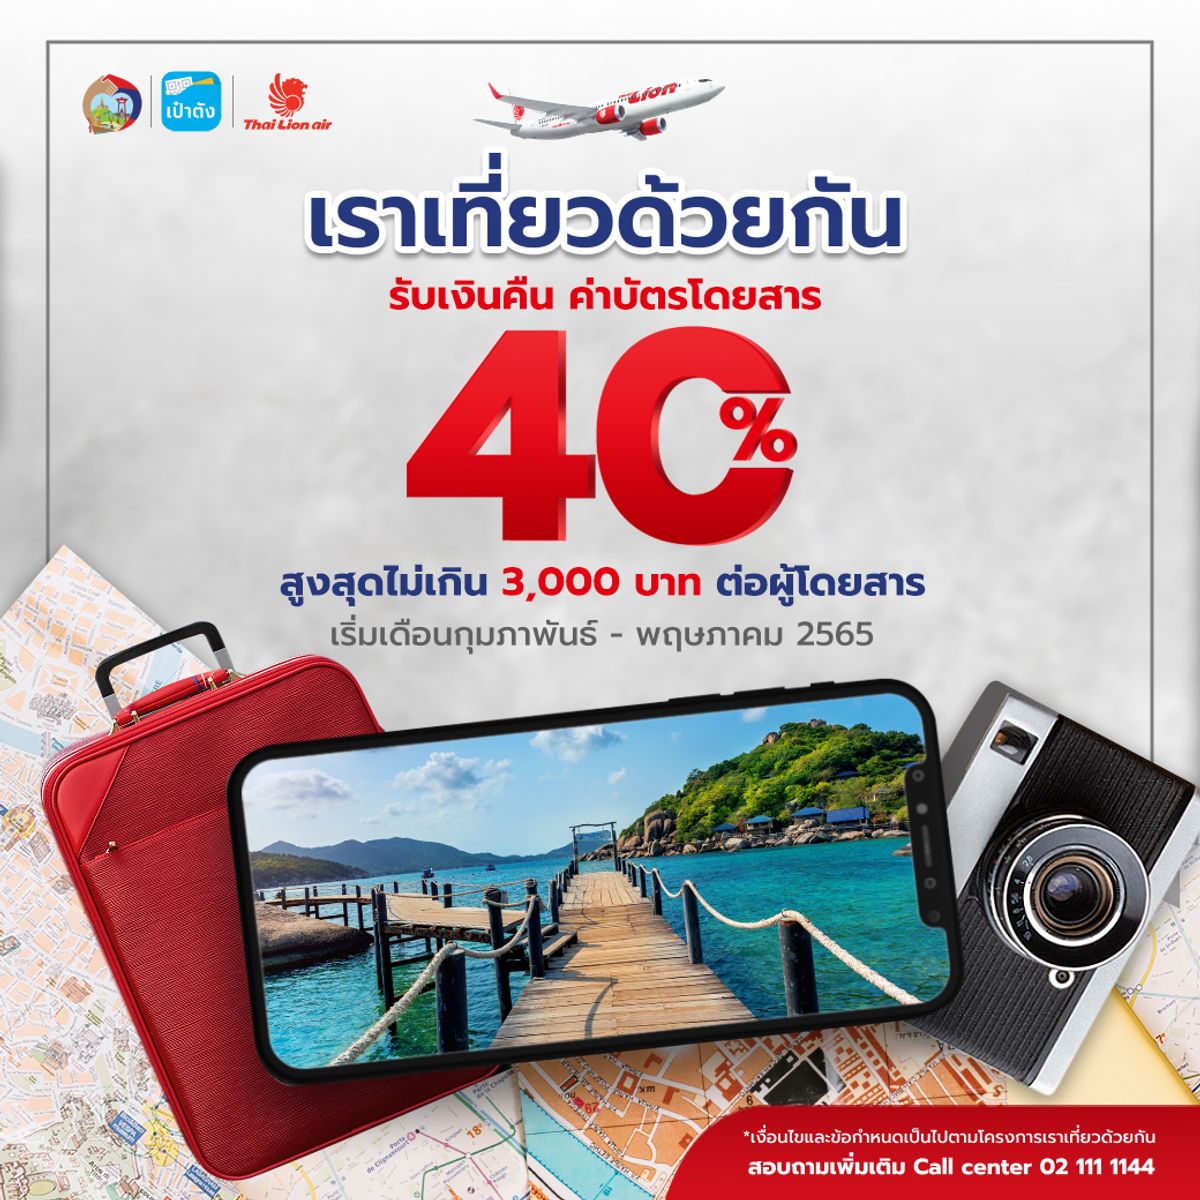 โปรตั๋วเครื่องบิน Thai Lion Air x เราเที่ยวด้วยกัน รับเงินคืน 40%